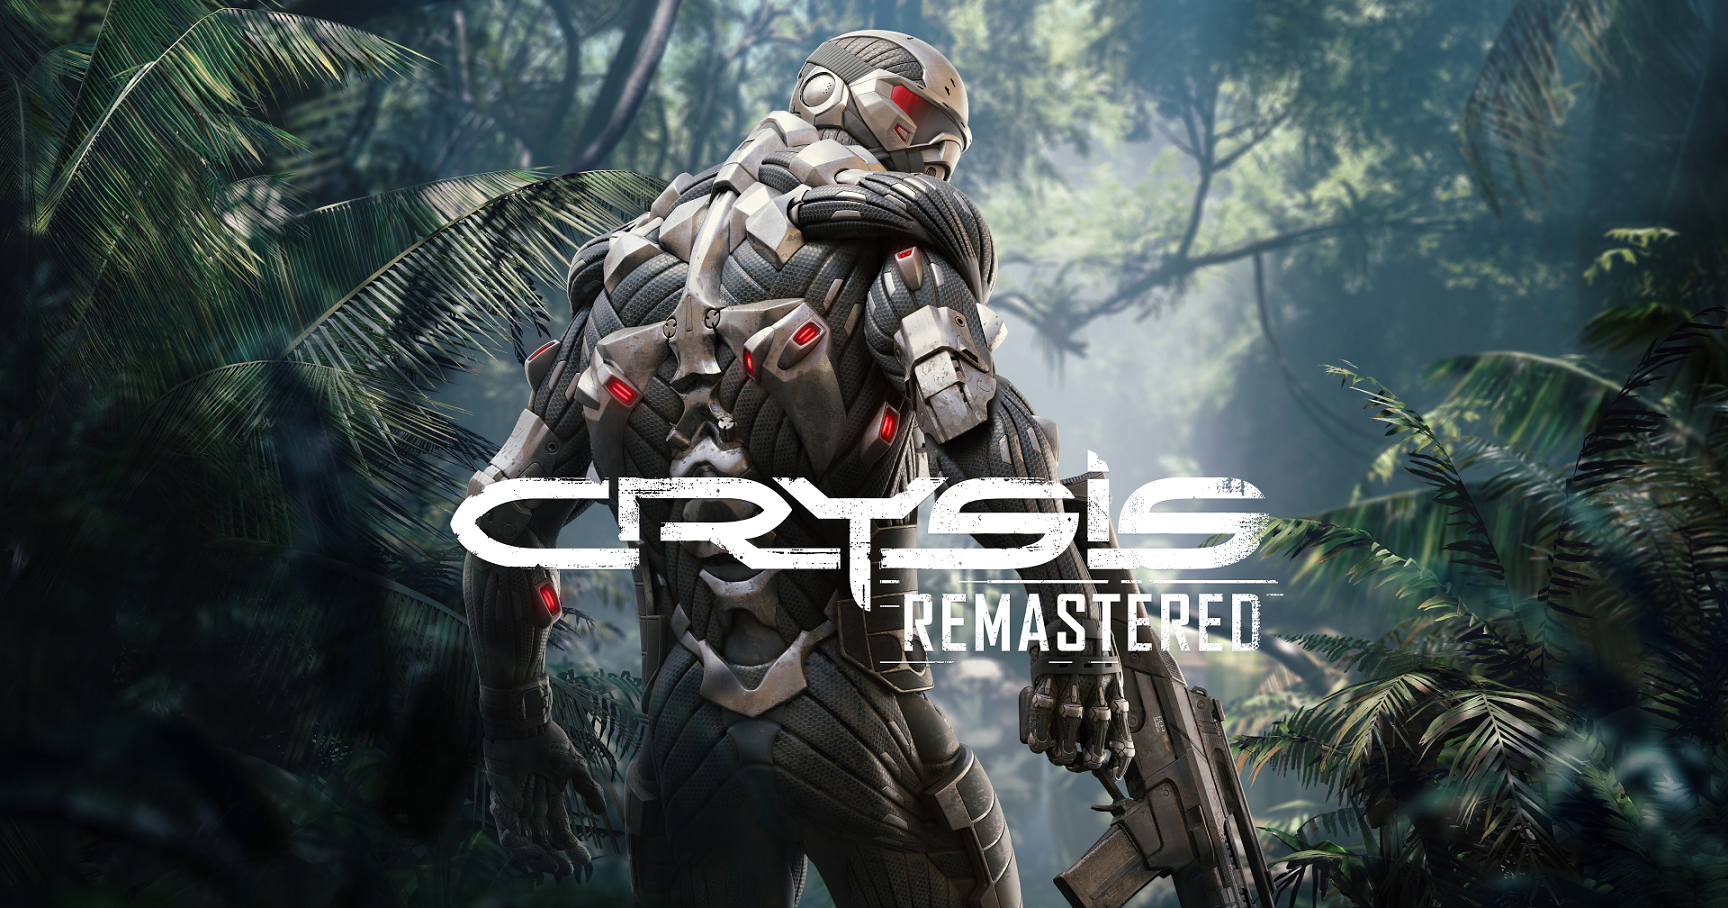 Crysis シリーズ初のnintendo Switchタイトル Crysis Remastered が8月6日に配信開始 Crytek Gmbhのプレスリリース